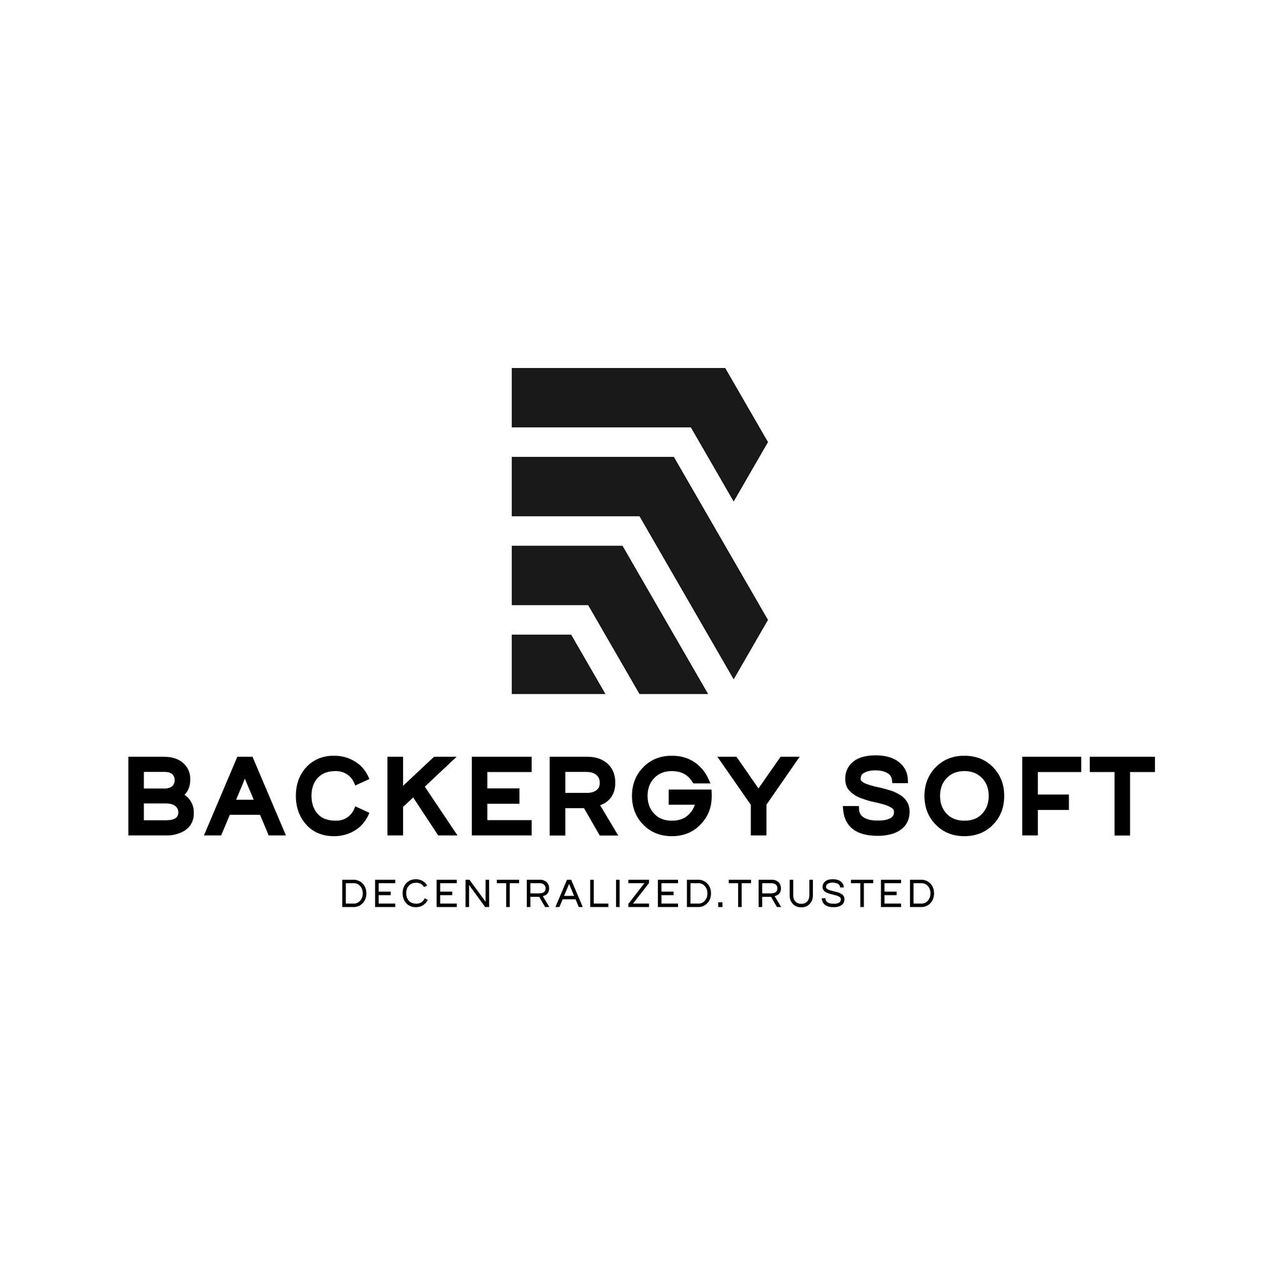 backersoft9